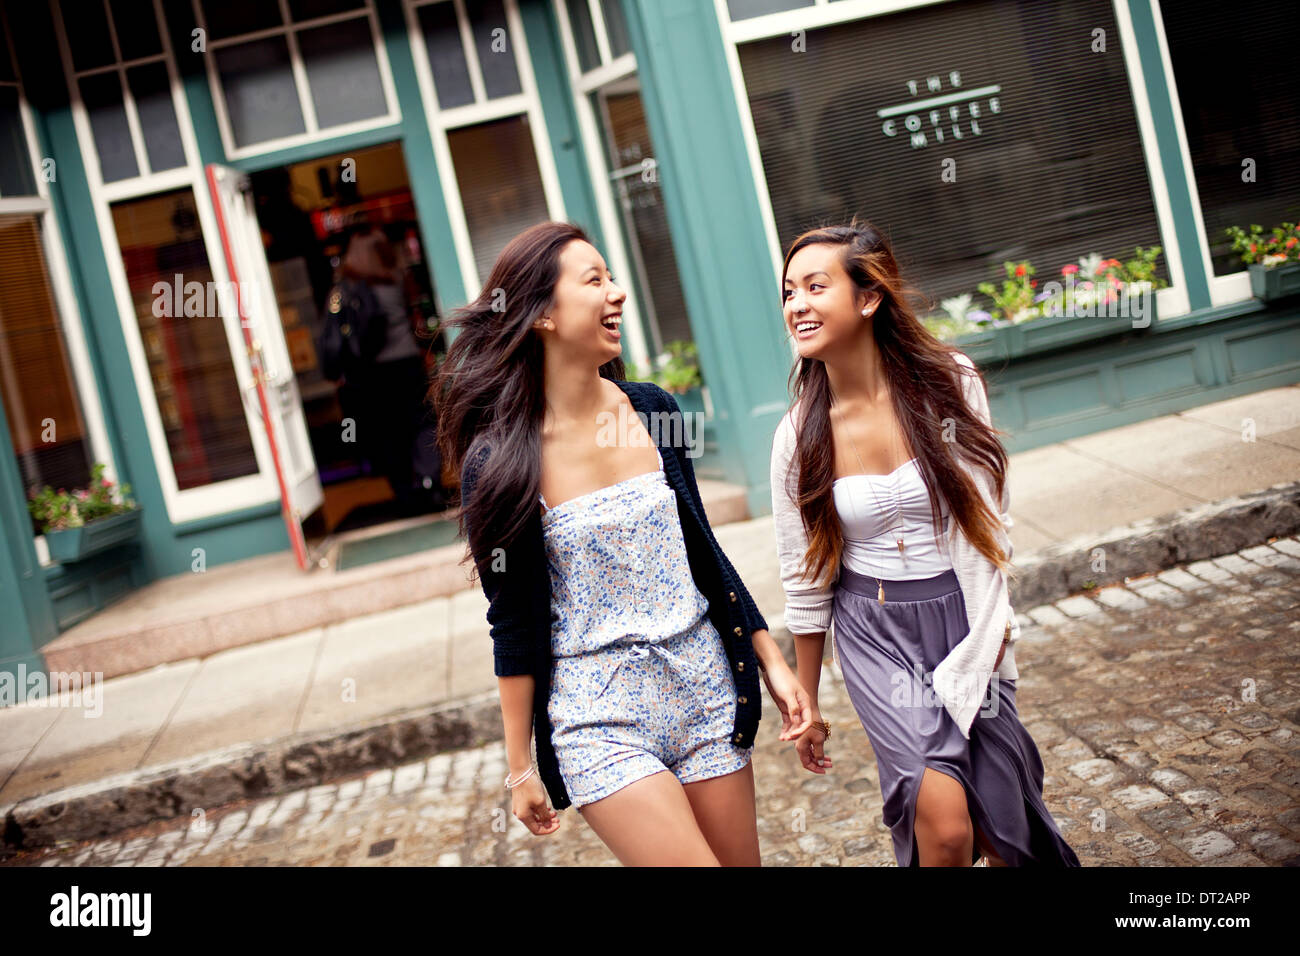 Due ragazze adolescenti camminando per strada, cafe in background Foto Stock